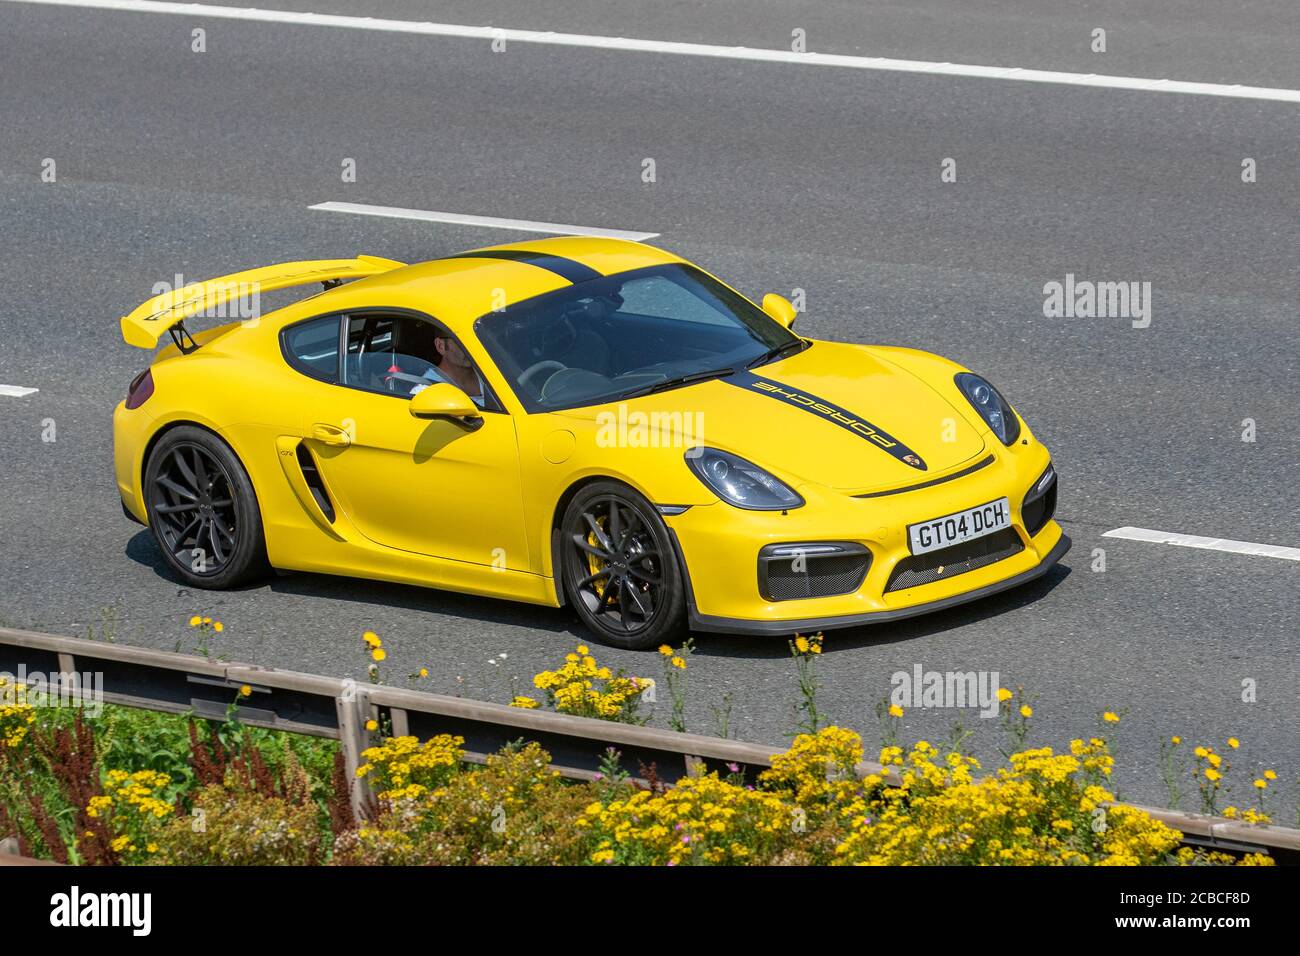 2015 jaune Porsche Cayman GT4 ; véhicules mobiles pour la circulation routière, voitures mobiles conduite de véhicules sur les routes britanniques, moteurs, conduite sur le réseau d'autoroute M6. Banque D'Images